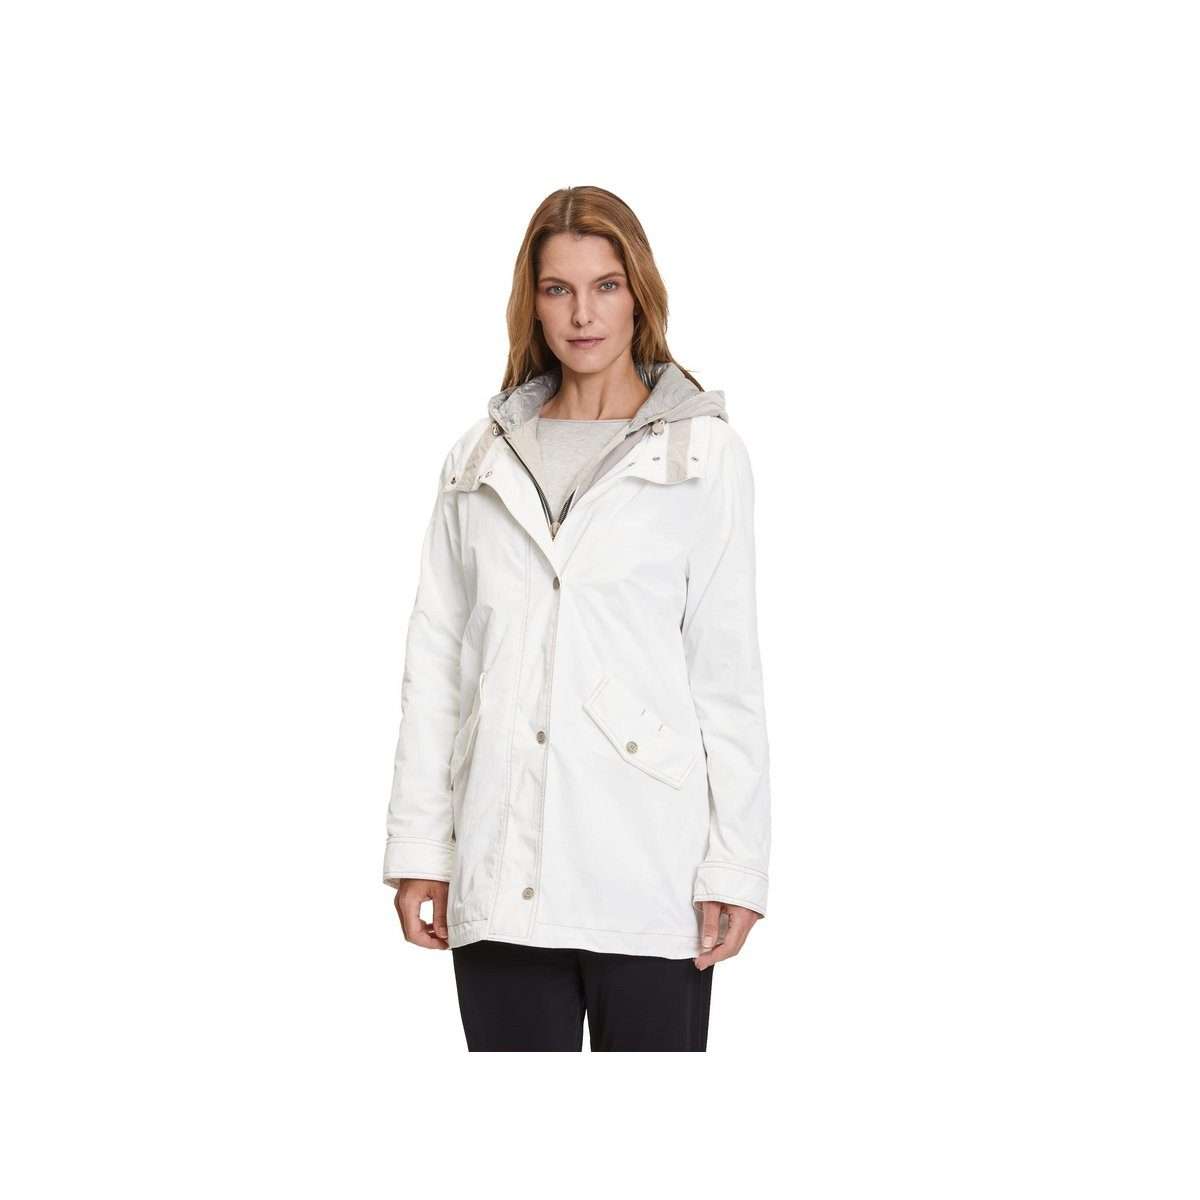 Функциональная куртка 3-в-1 зимняя белая (1 шт.)